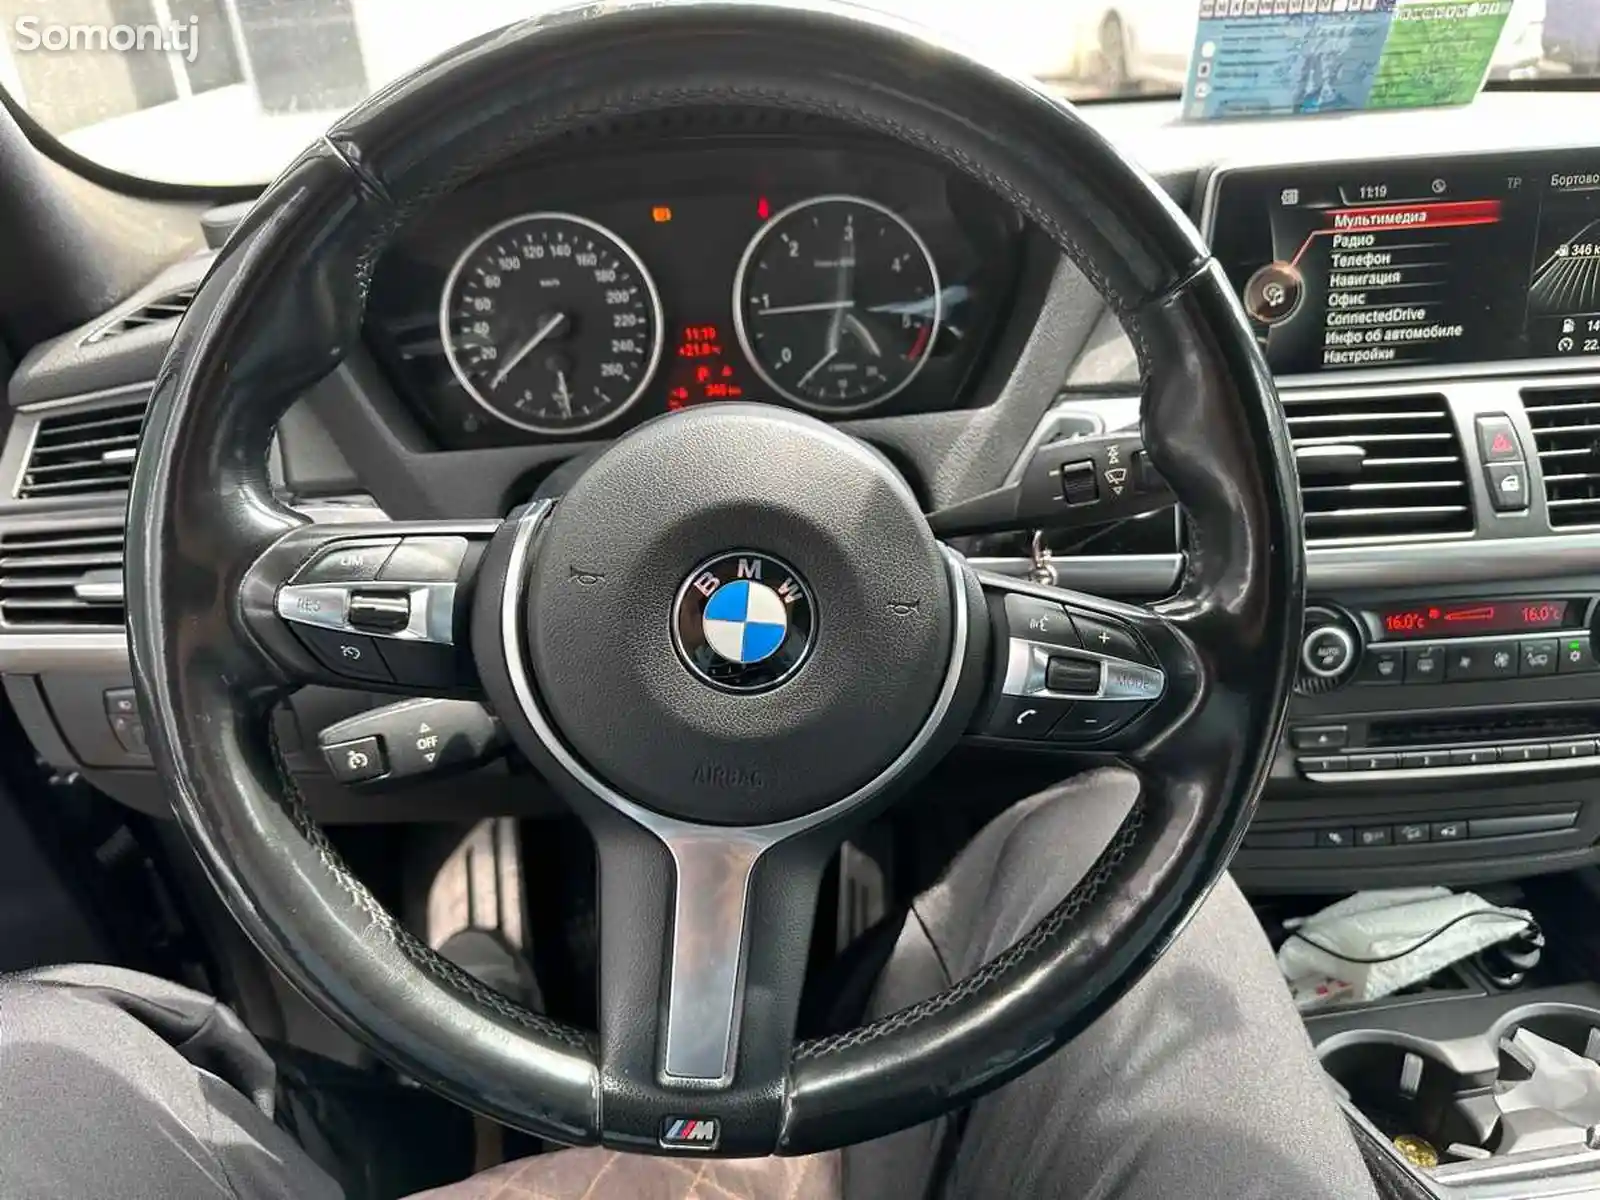 Руль от BMW